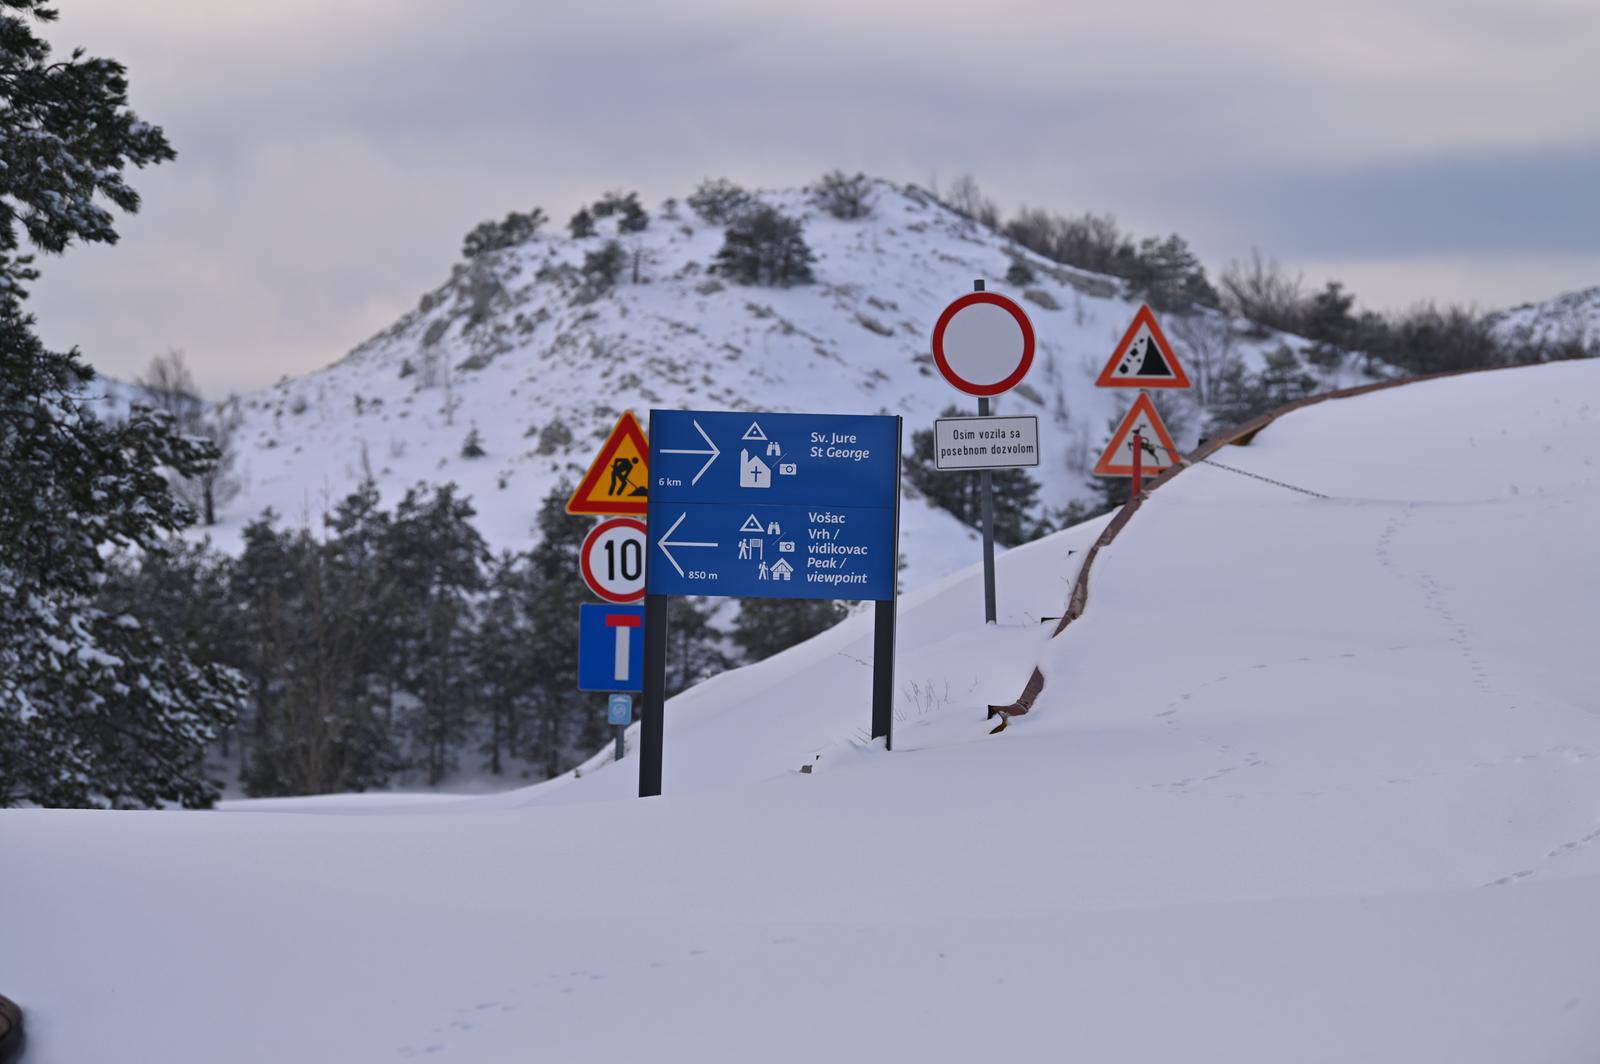 Snijeg okovao Biokovo, rali?ar Mišo Gojak sa svojom frezom ulaže velike napore da cesta postane prohodna.